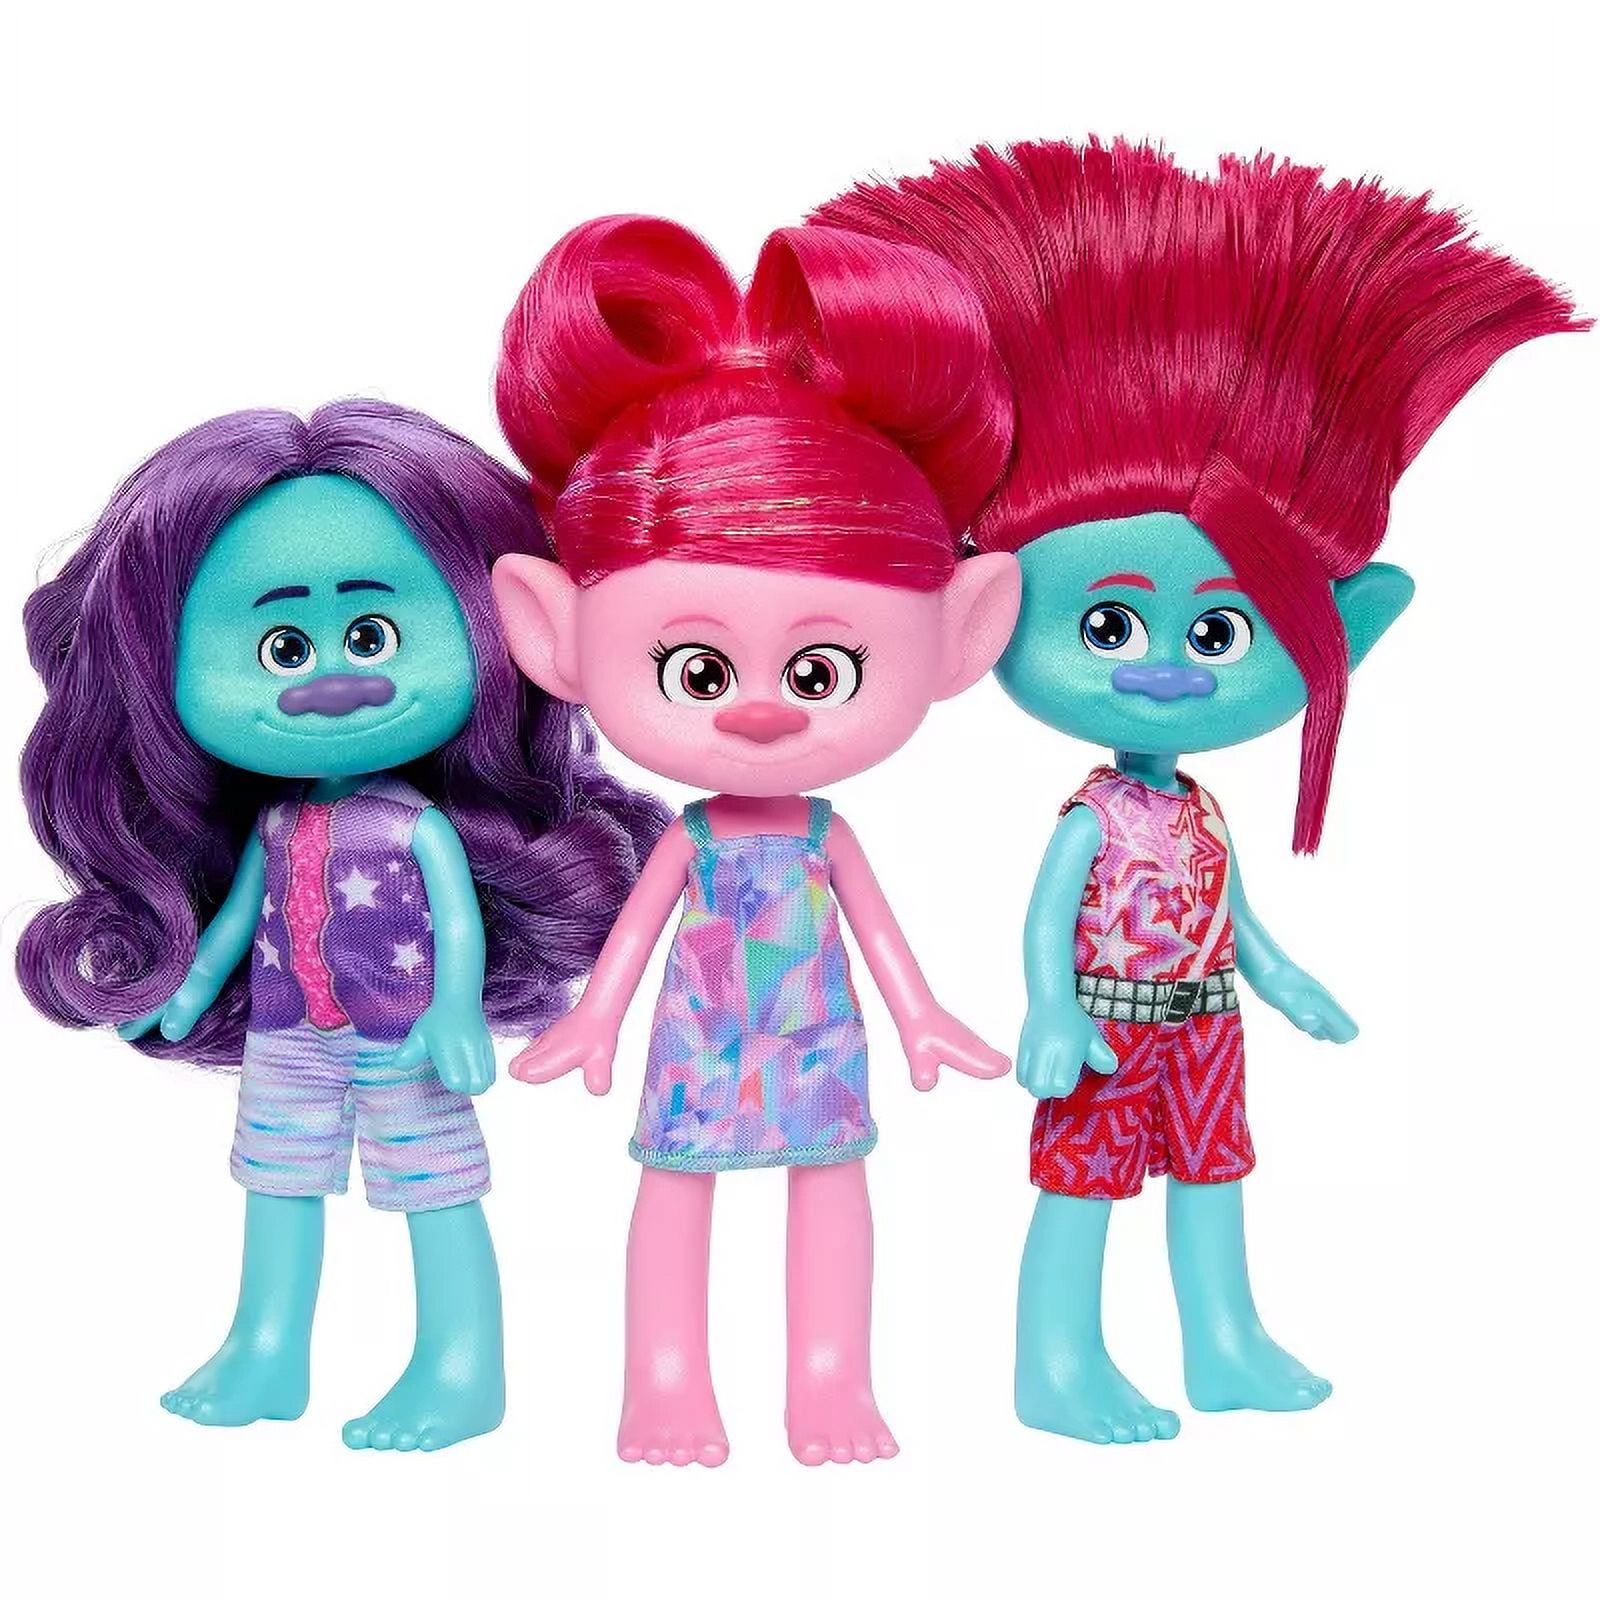 DreamWorks Trolls Band Together Trendsettin' Trio Fashion Dolls